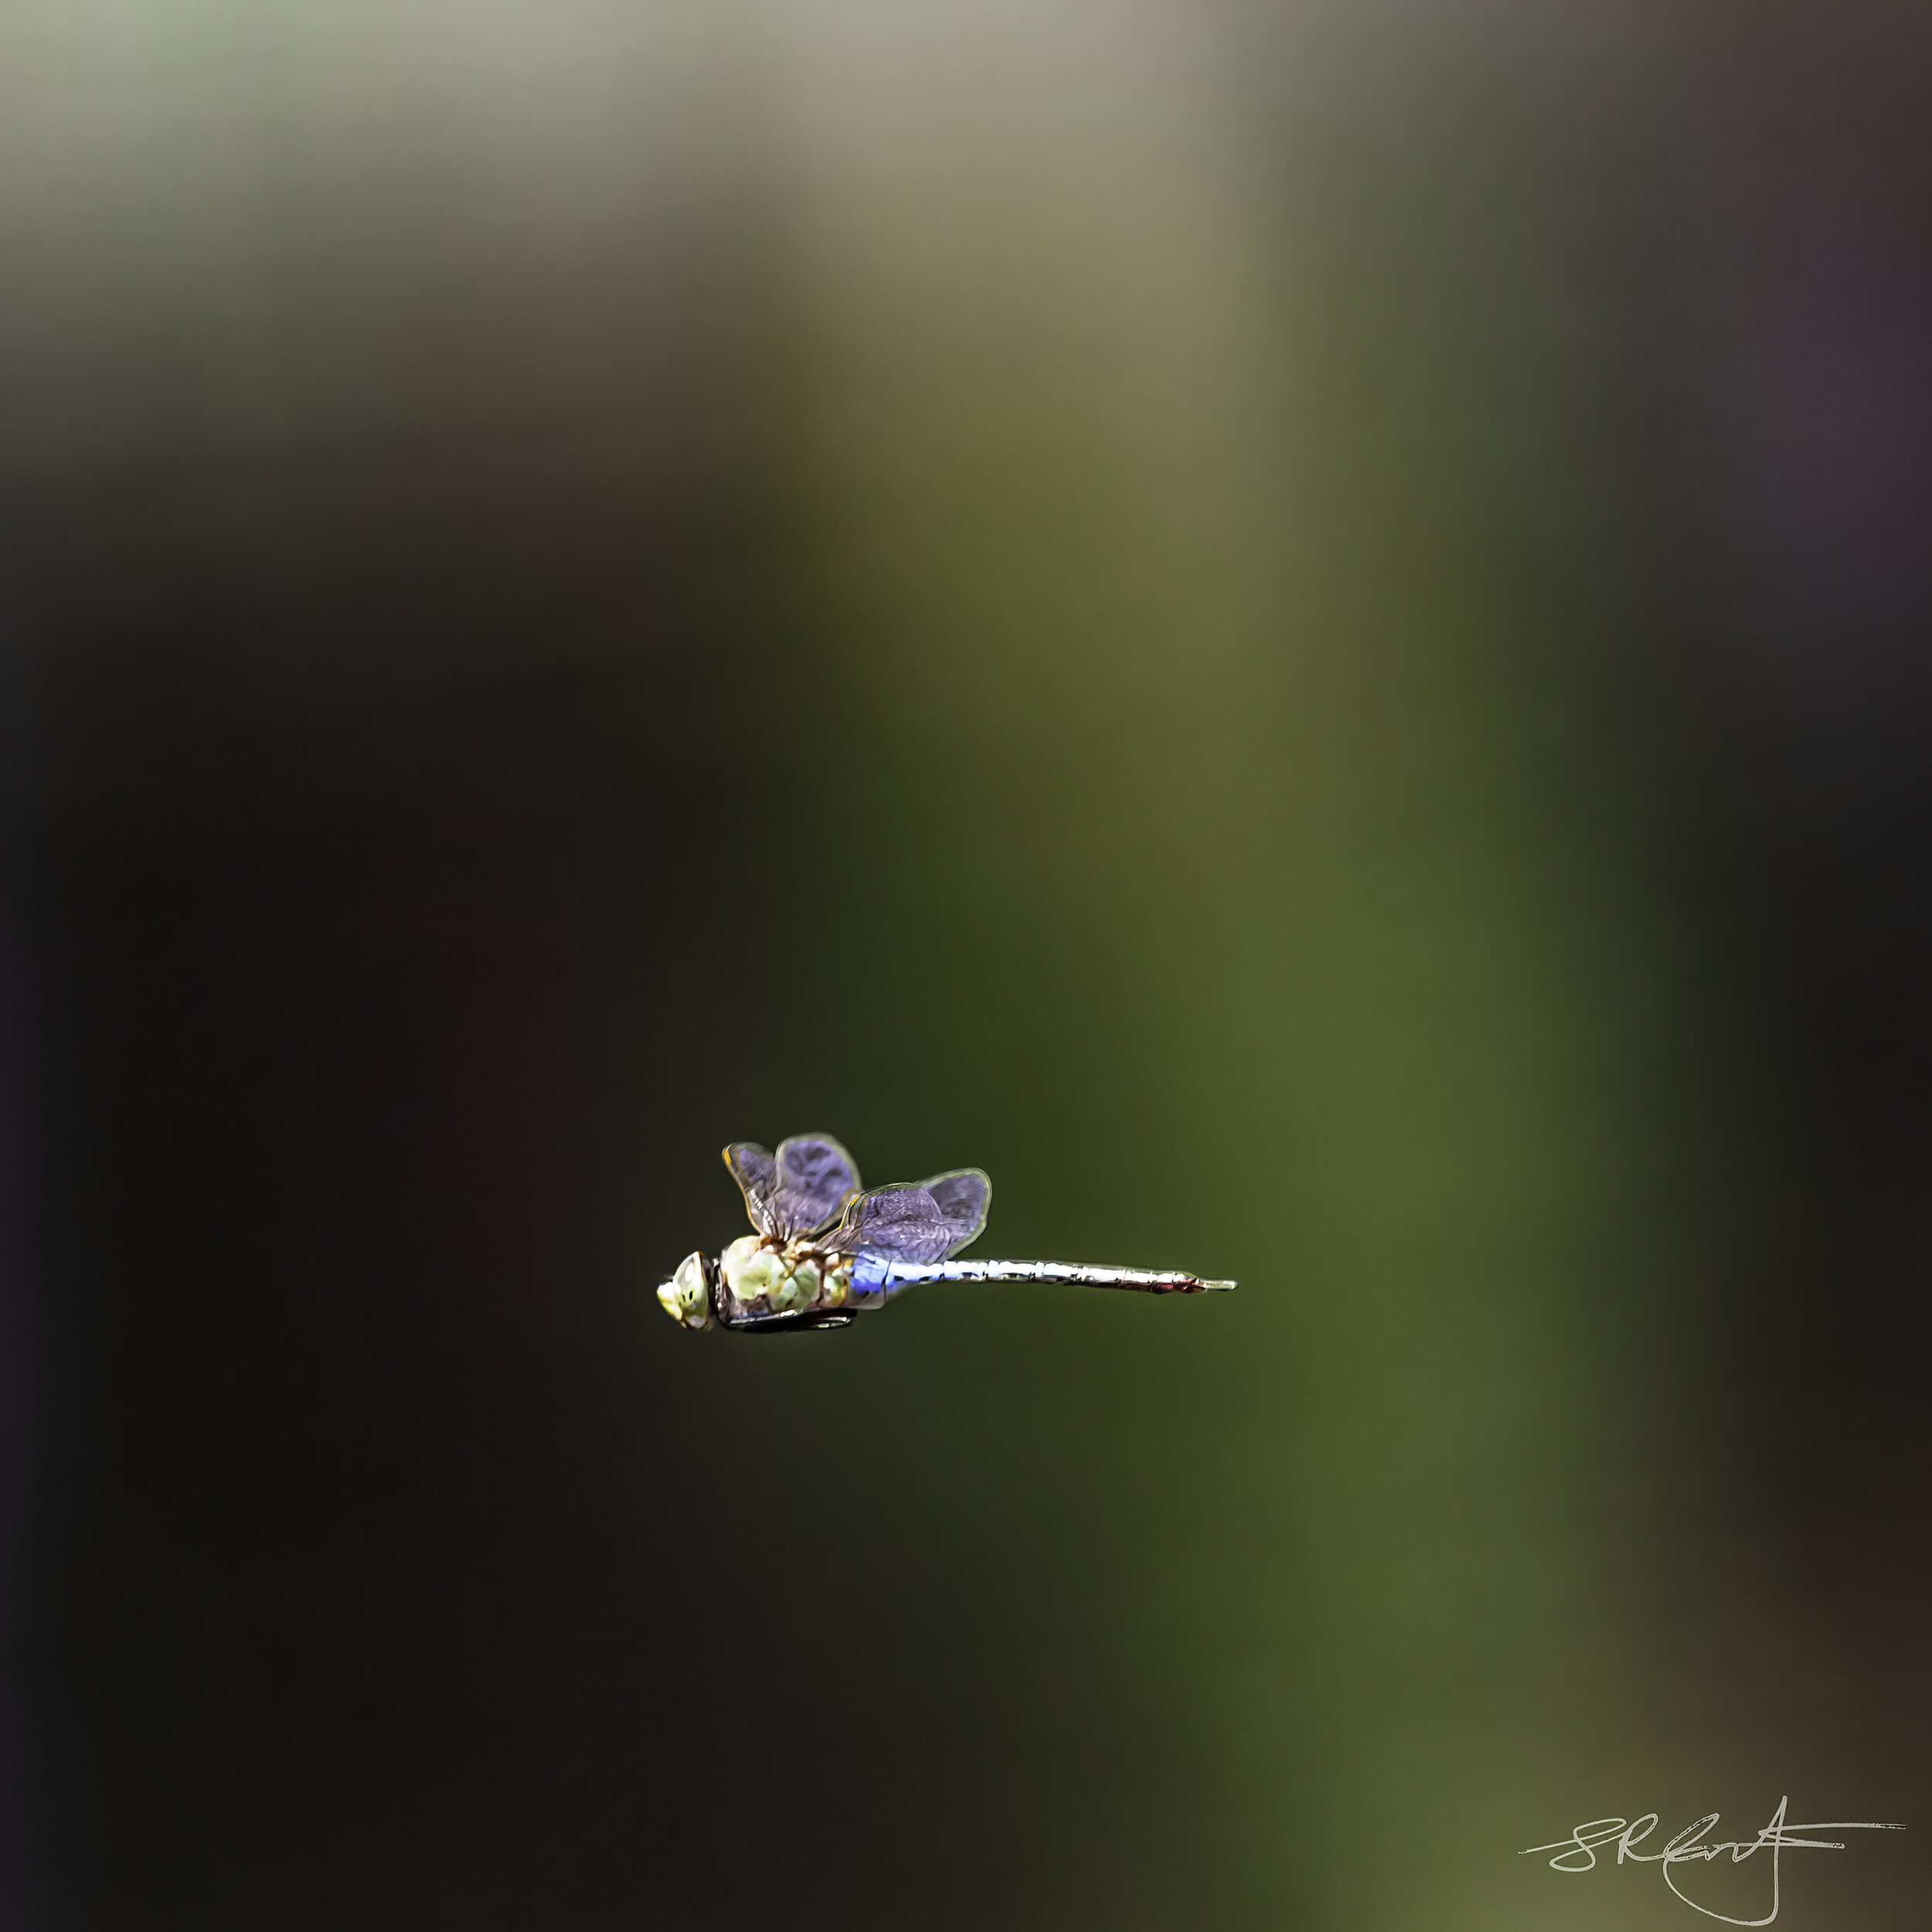 2020 10 07 Dragonflies-8280-DeNoiseAI-denoise.jpg